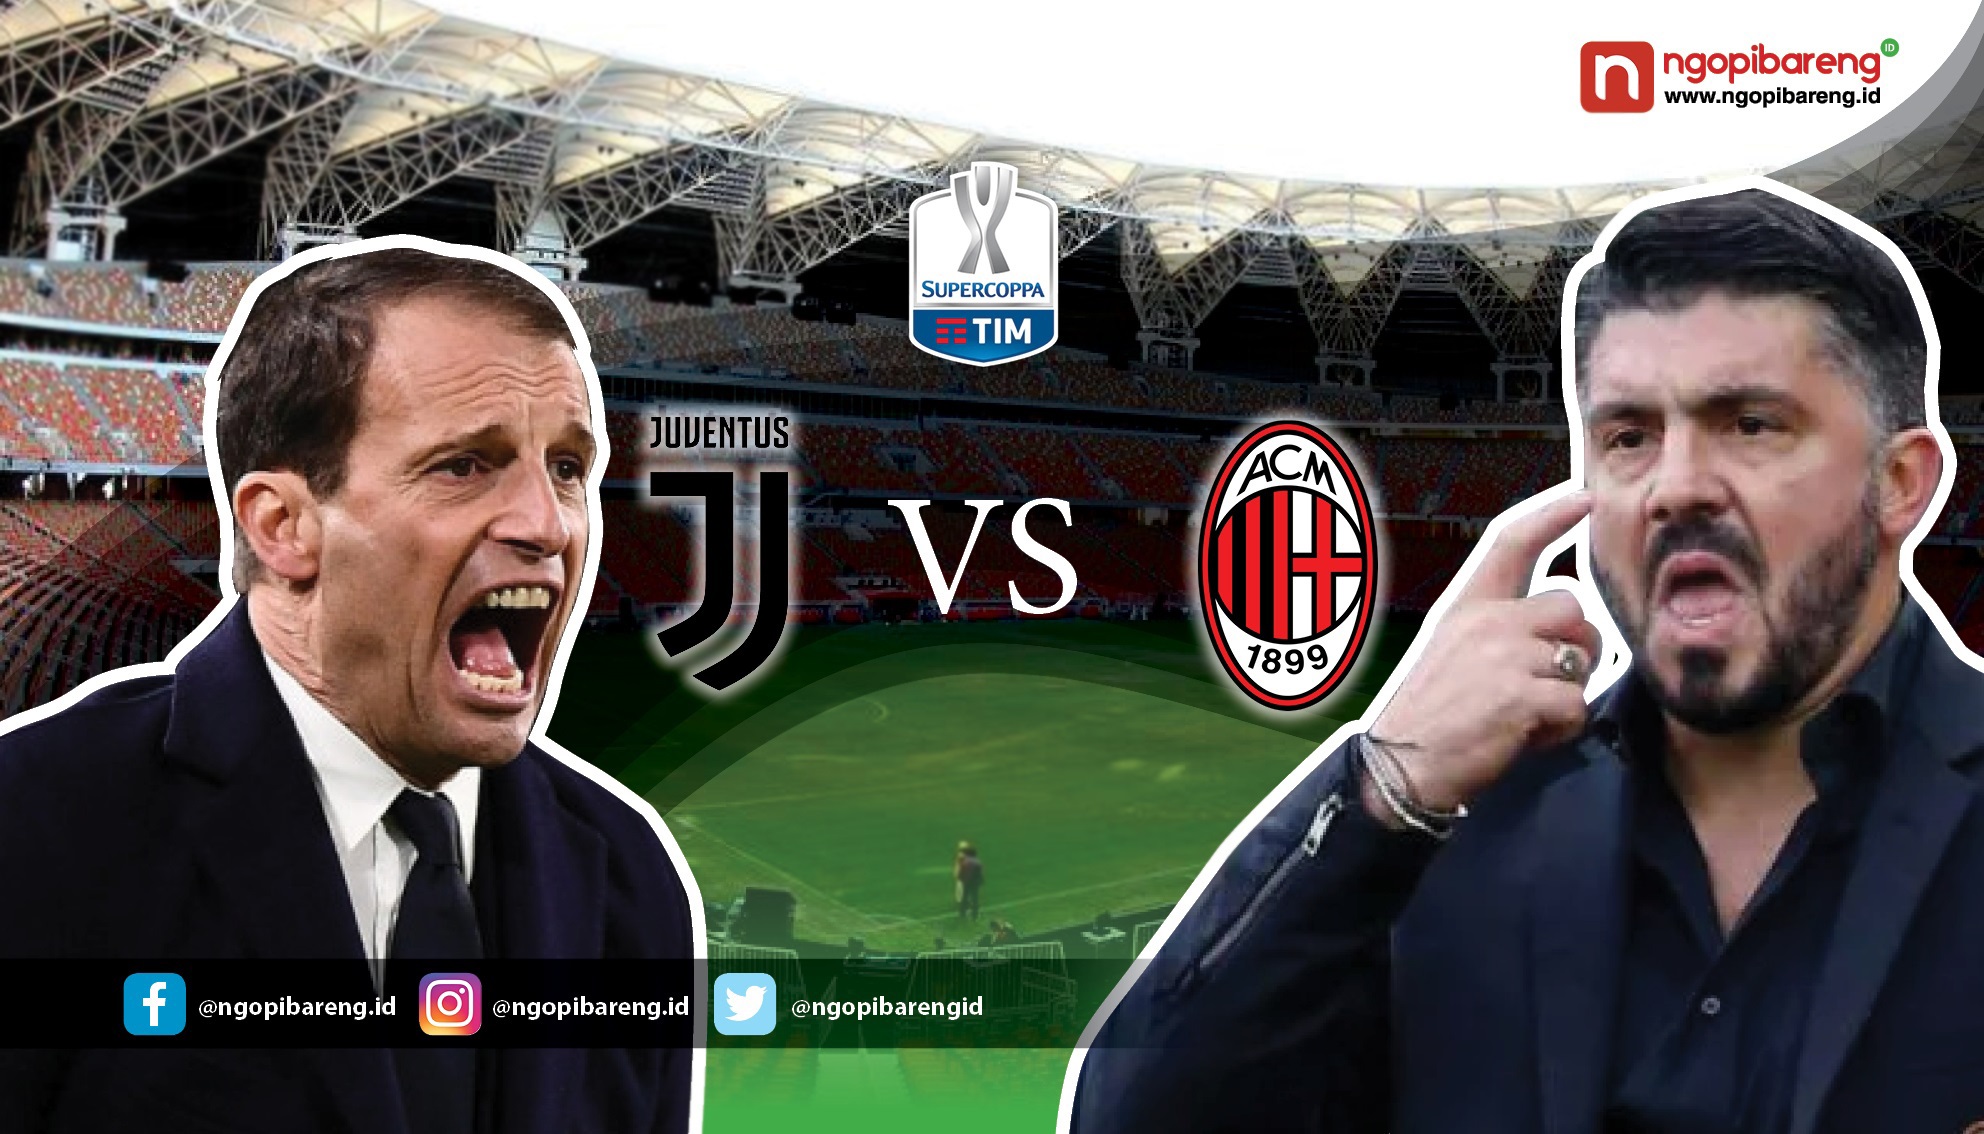 Juventus dan AC Milan akan berebut rekor sebagai kolektor terbanyak Piala Super Italia. (Design by: Vidhi/Ngopibareng)